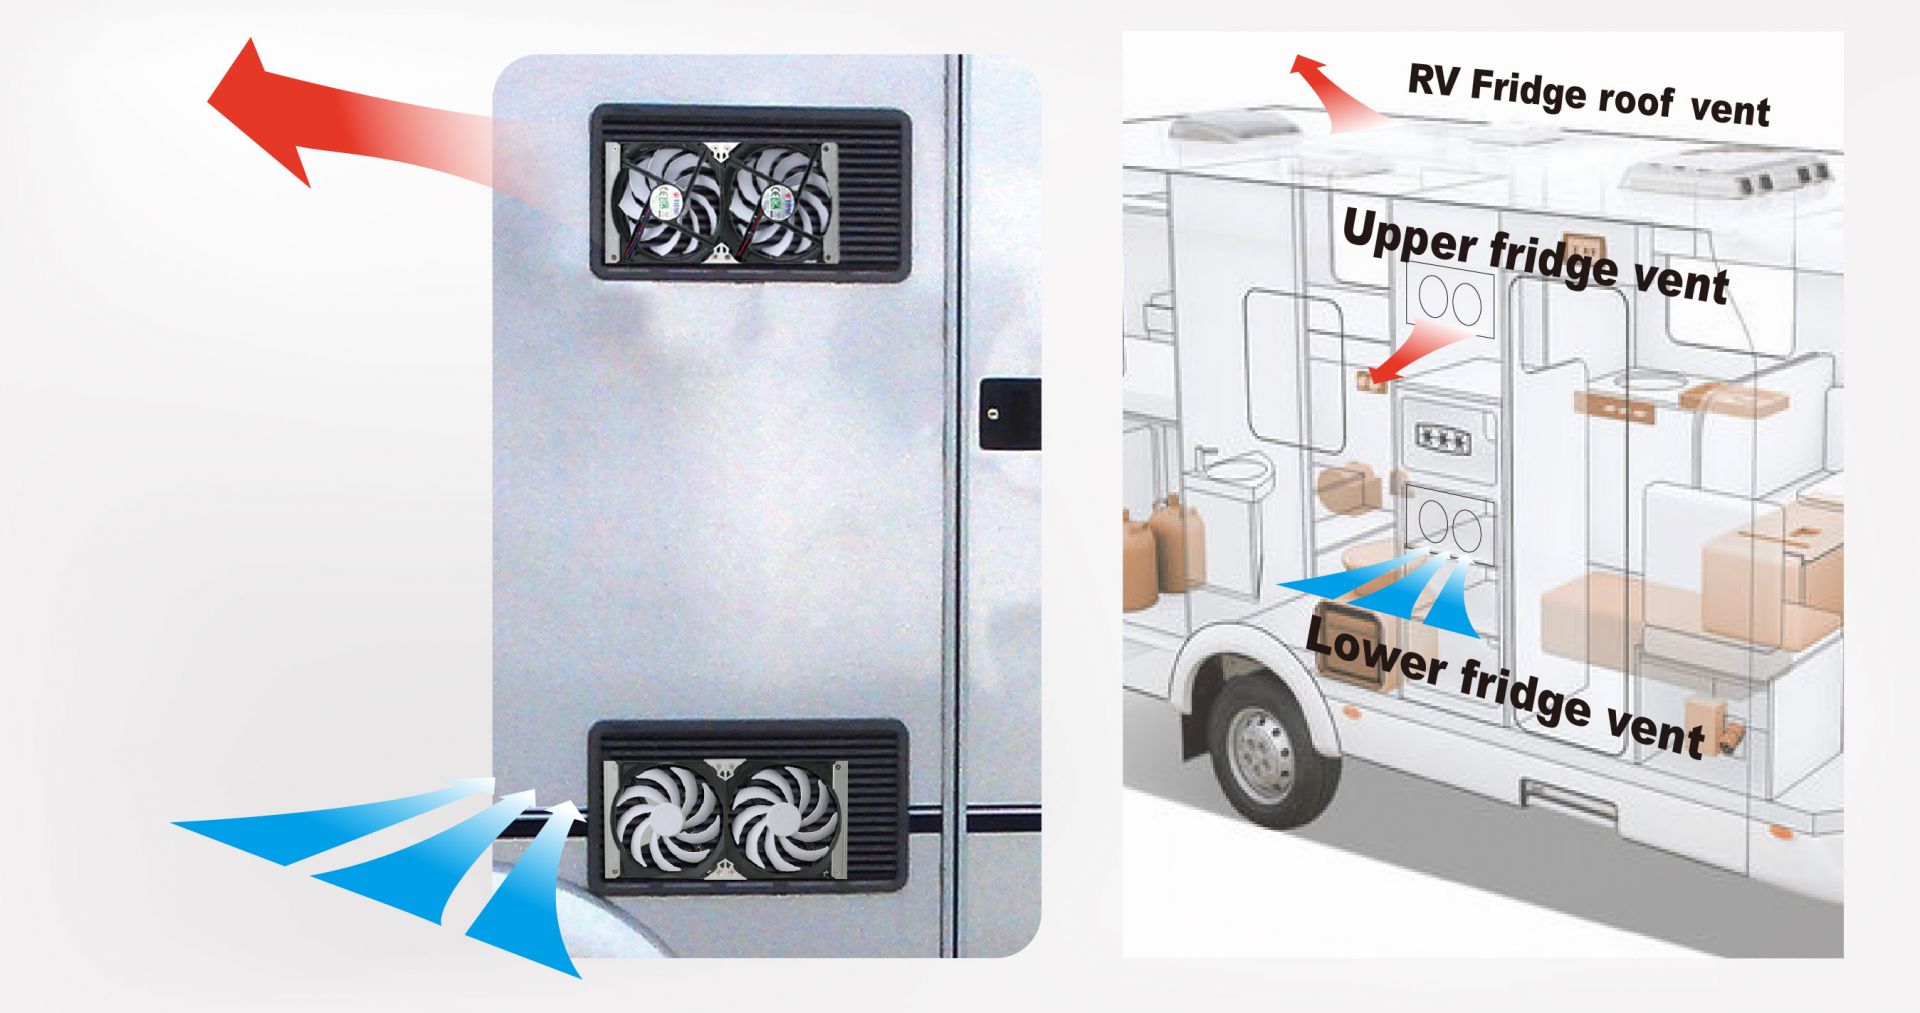 El lugar de ventilación correcto es la clave para aumentar la circulación de la nevera RV.